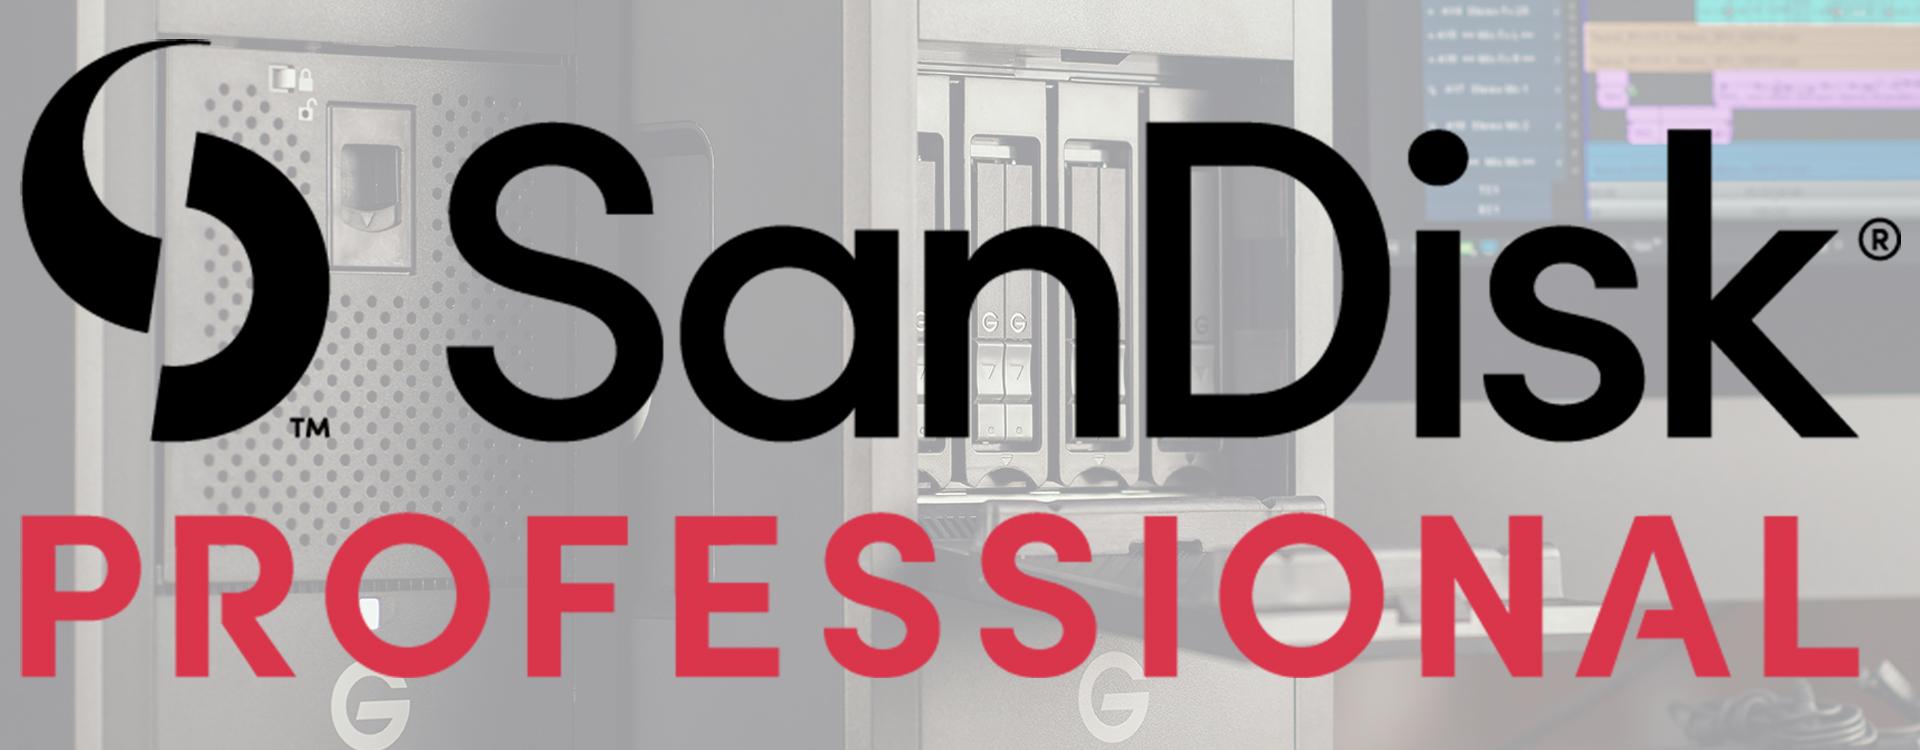 Sandisk Professional, soluciones profesionales para el guardado, transporte y gestión de archivos digitales